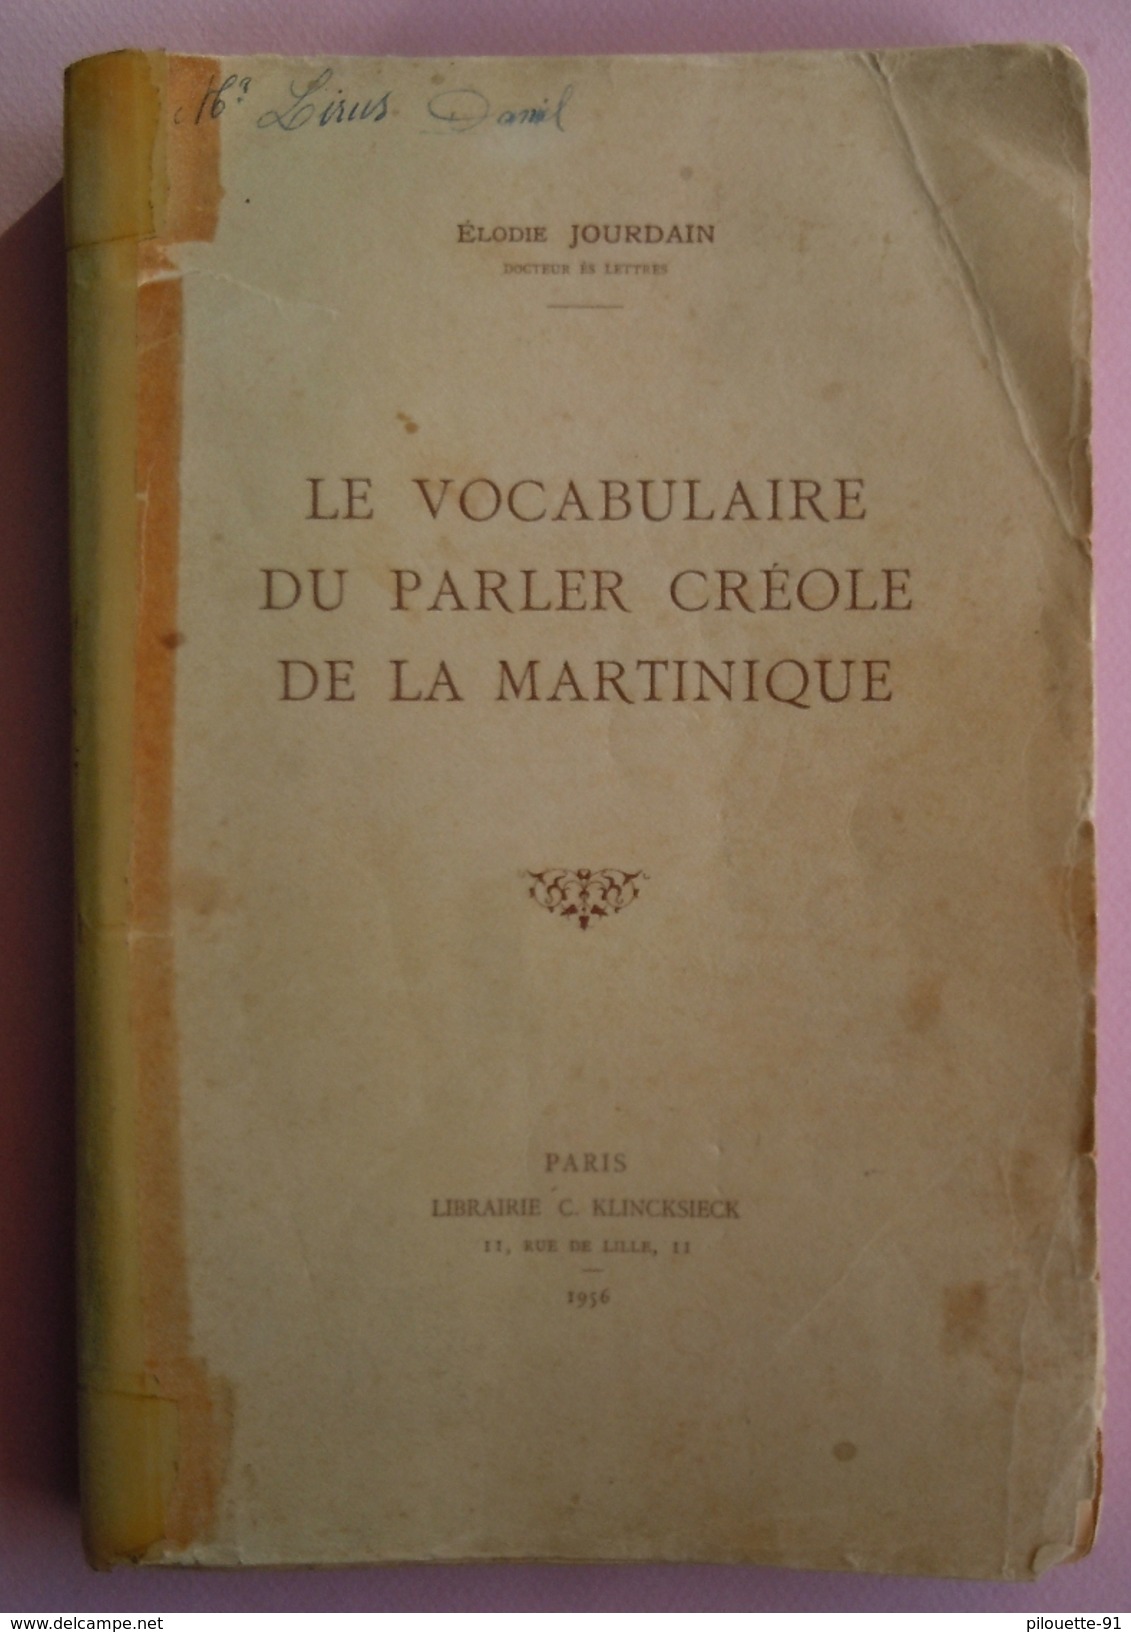 Le Vocabulaire Du Parler Créole De La Martinique Par Elodie JOURDAIN (Docteur ès Lettres) 1956 Librairie C. KLINCKSIECK - Outre-Mer